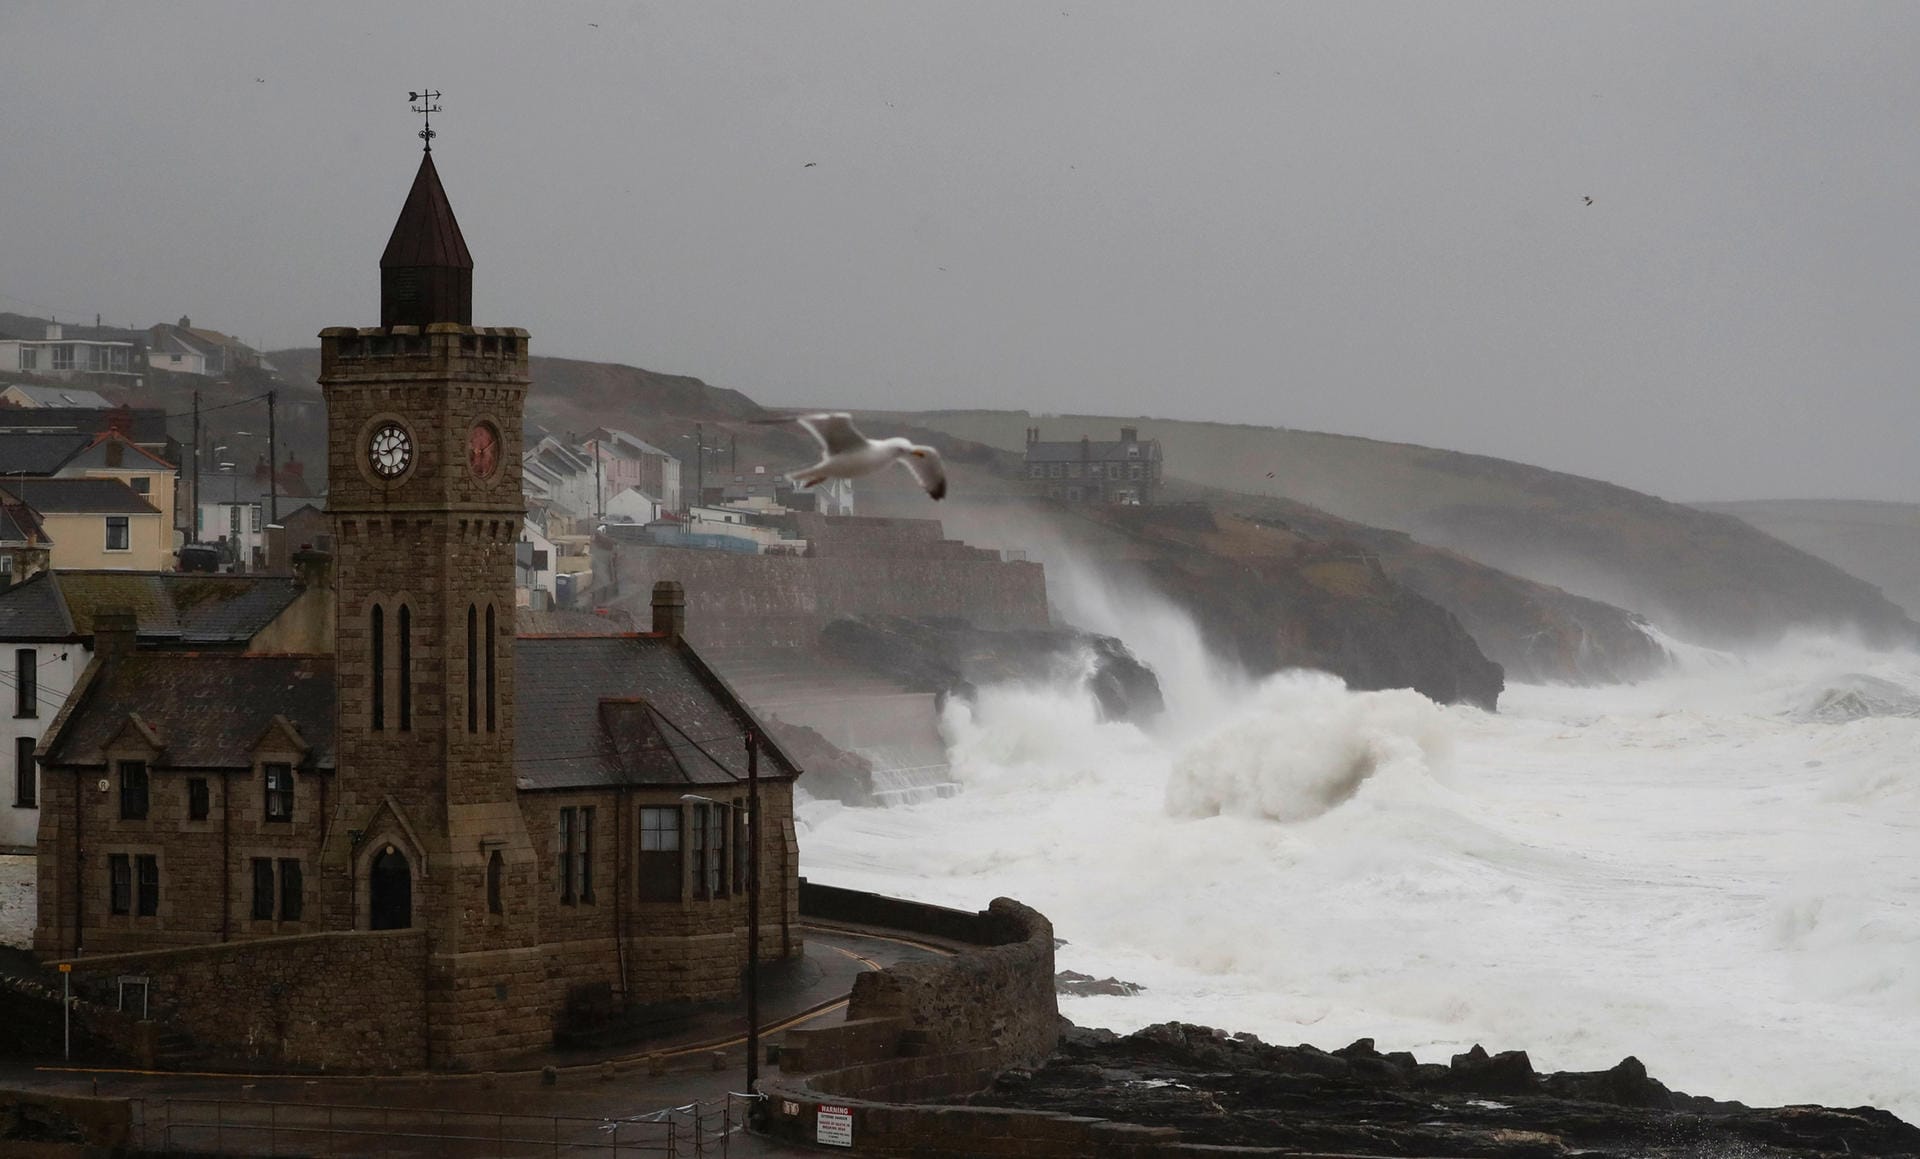 Rund 600 Hochwasserwarnungen gaben die Behörden am Sonntag für verschiedene Regionen Großbritanniens heraus. Hier wird der Hafen von Porthleven in Cornwall von hohen Wellen überschwemmt.